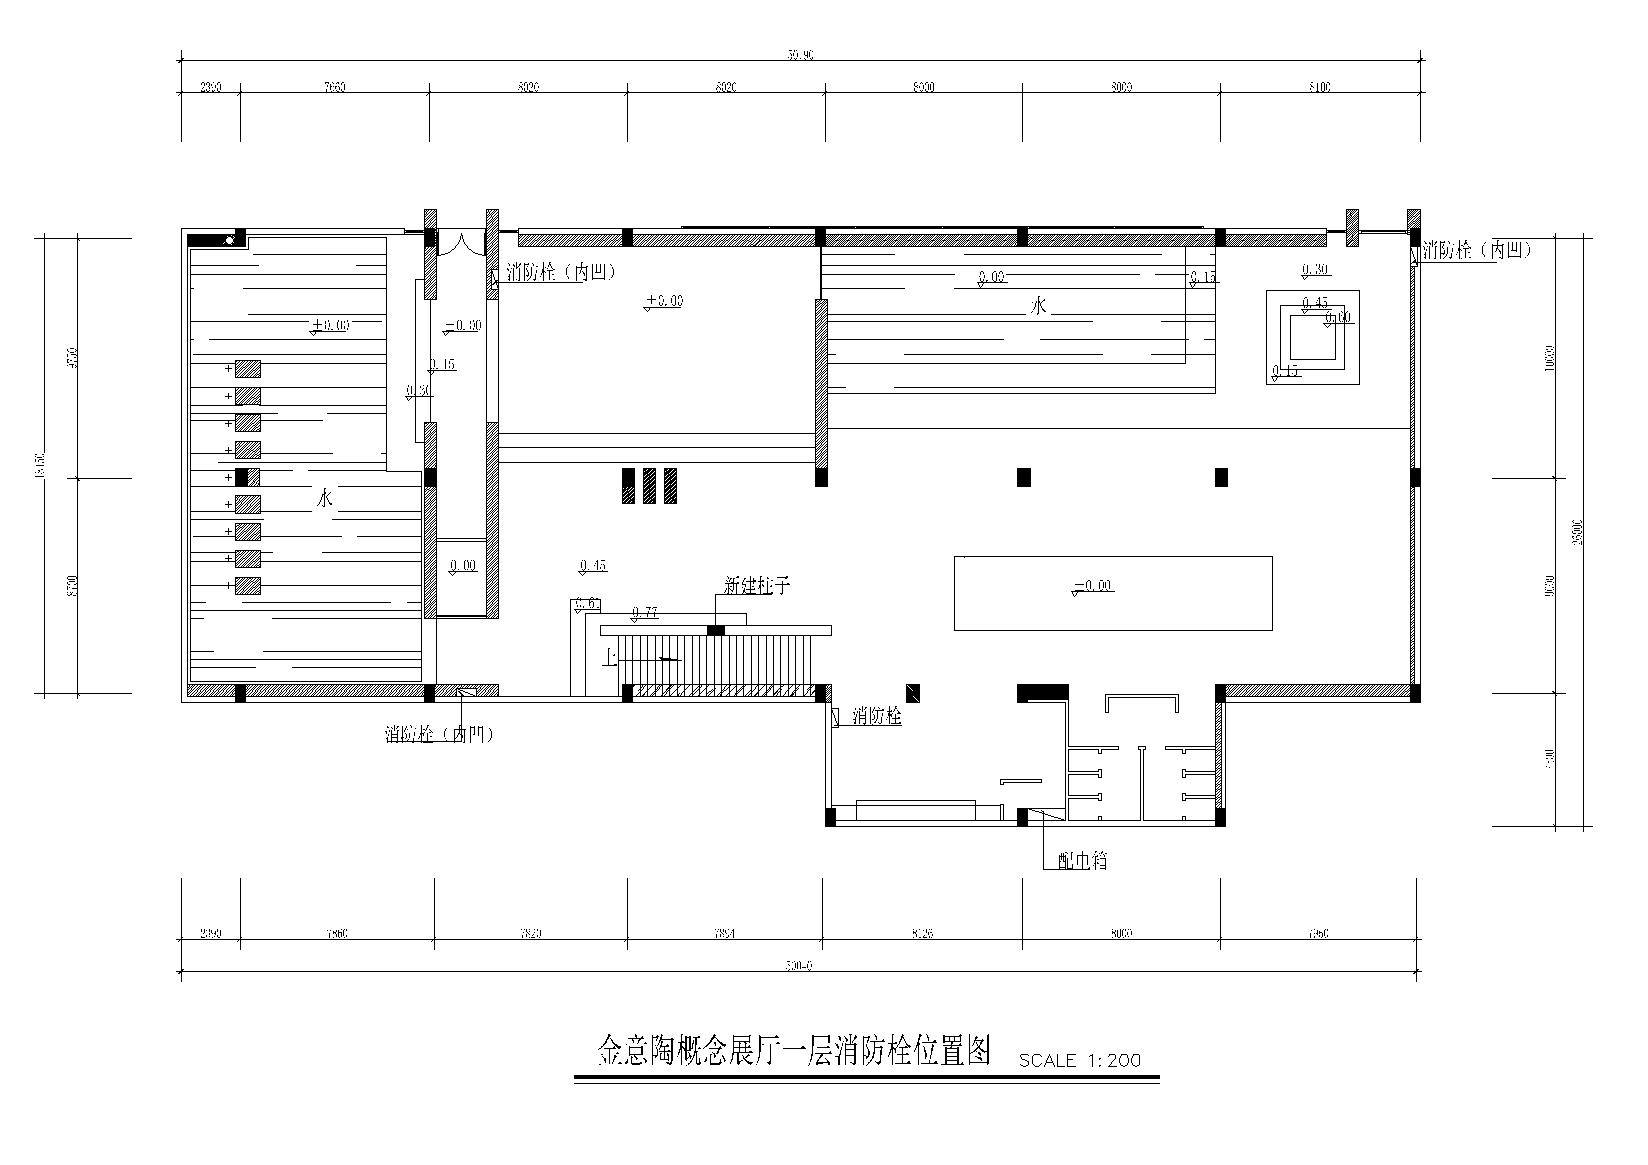 KITO某概念展厅艺术思想馆施工图+建筑外观-消防栓点位图10